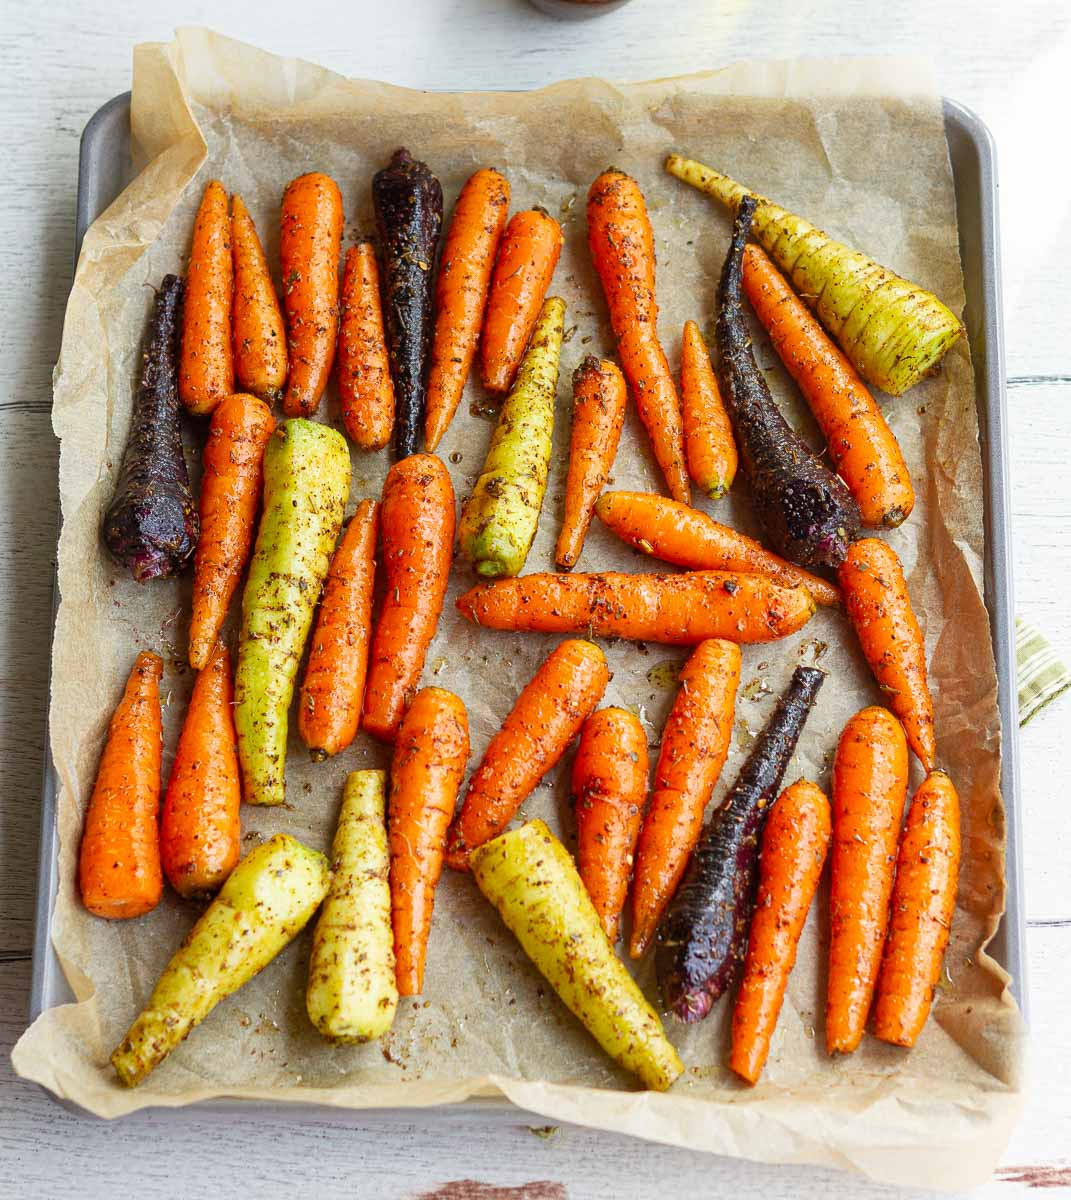 Seasoned carrots on a baking tray